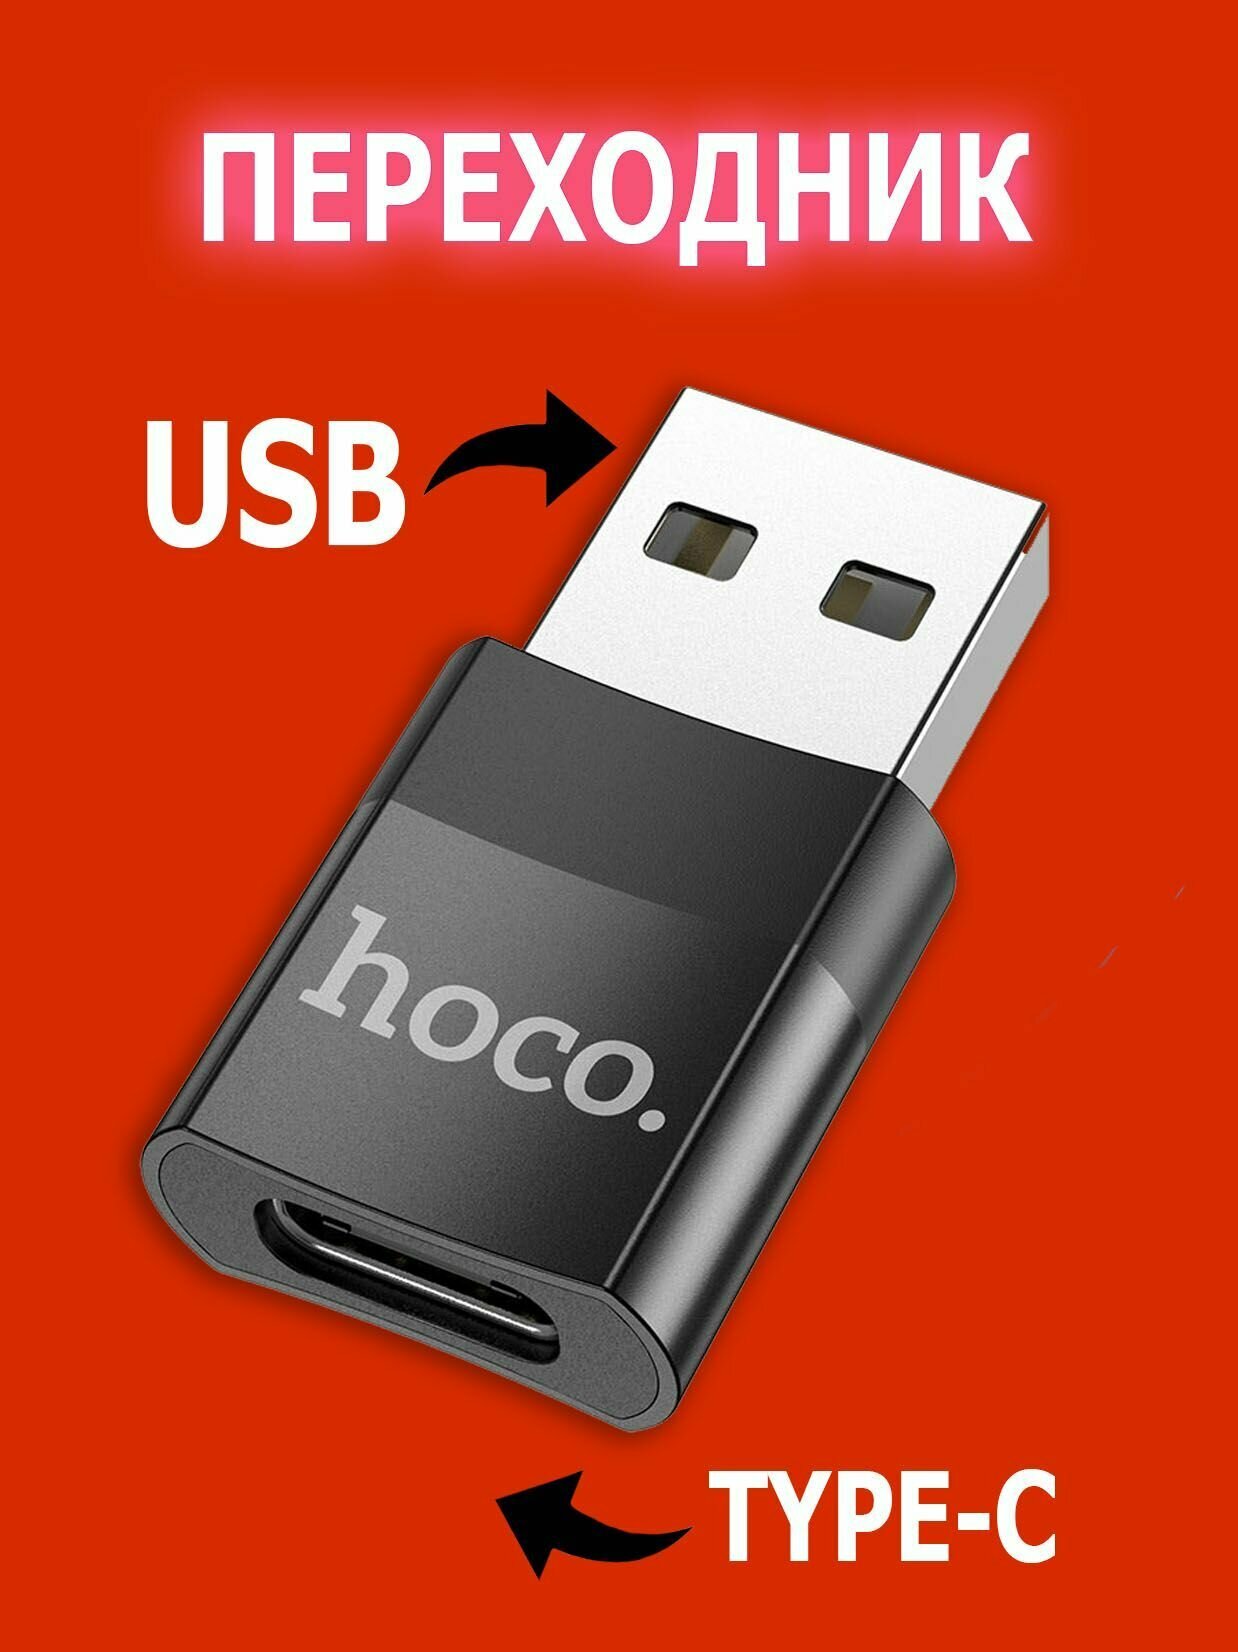 Переходник с USB 2.0 (папа/выход) на Type-C (мама/вход), Адаптер OTG тайп си для мобильных устройств, планшетов, смартфонов и компьютеров. Hoco UA17 Черный